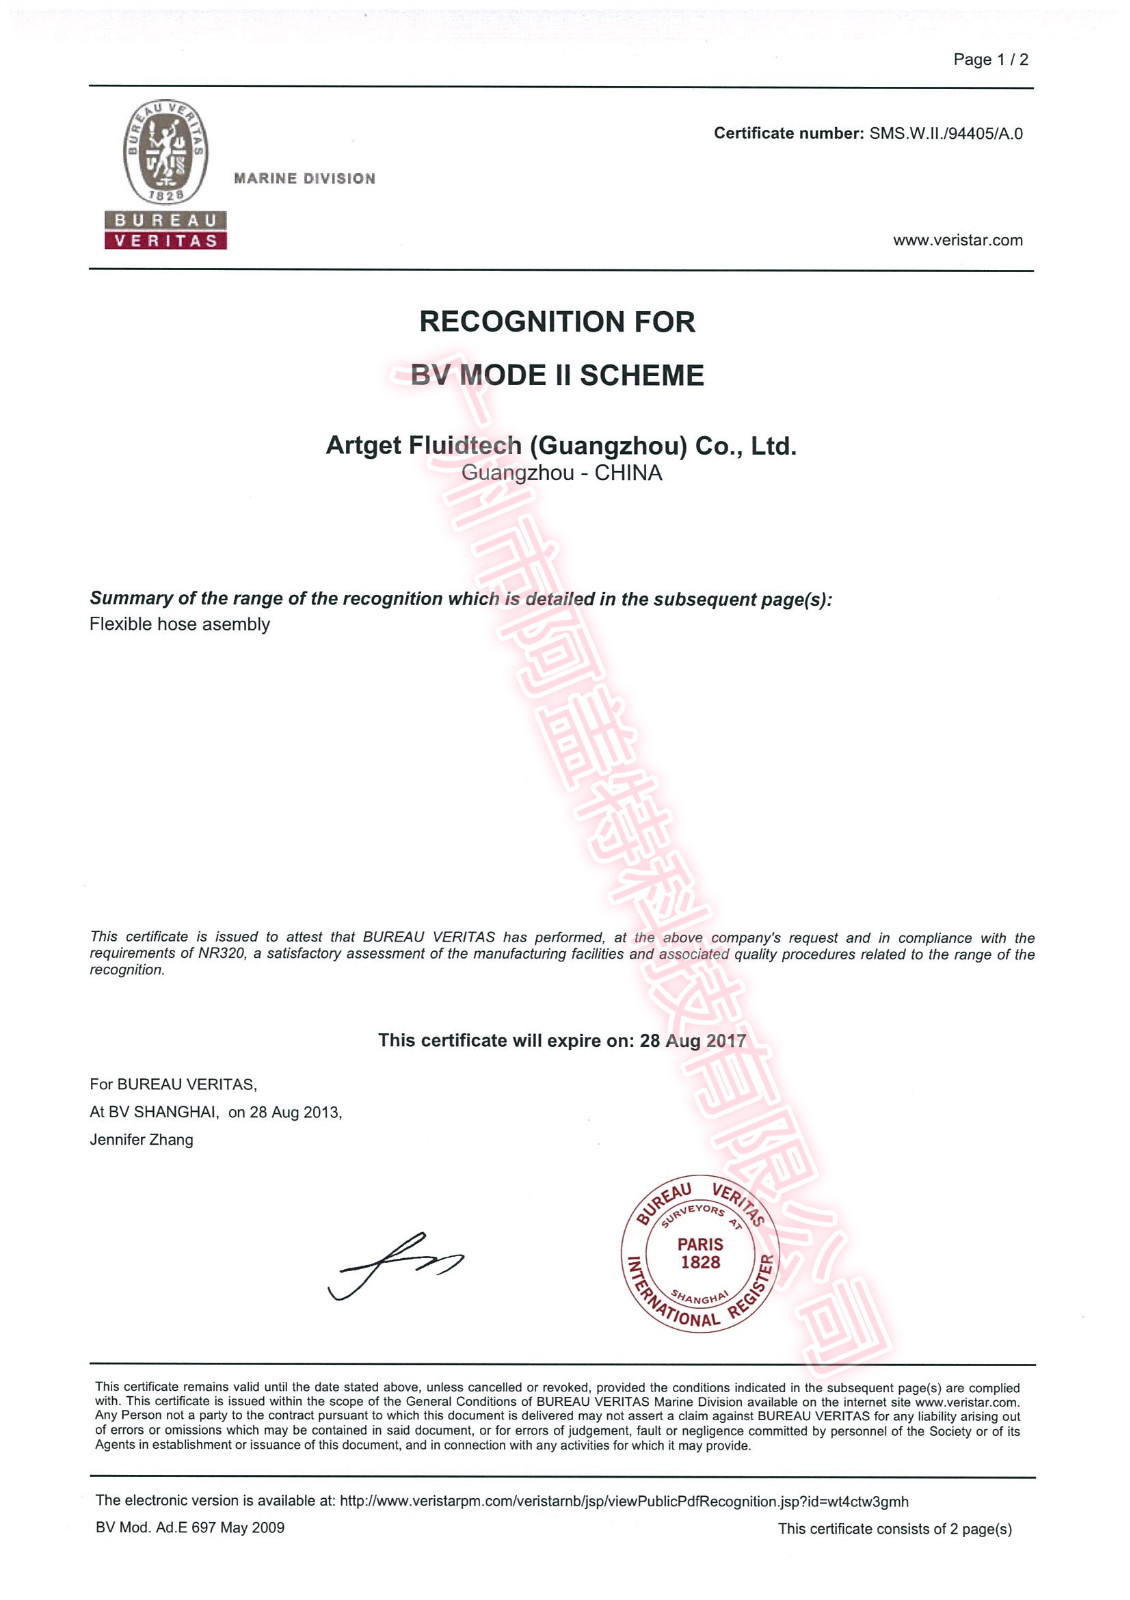 ARTGET管路件产品通过法国船级社BV型式认可证书、BV产品证书